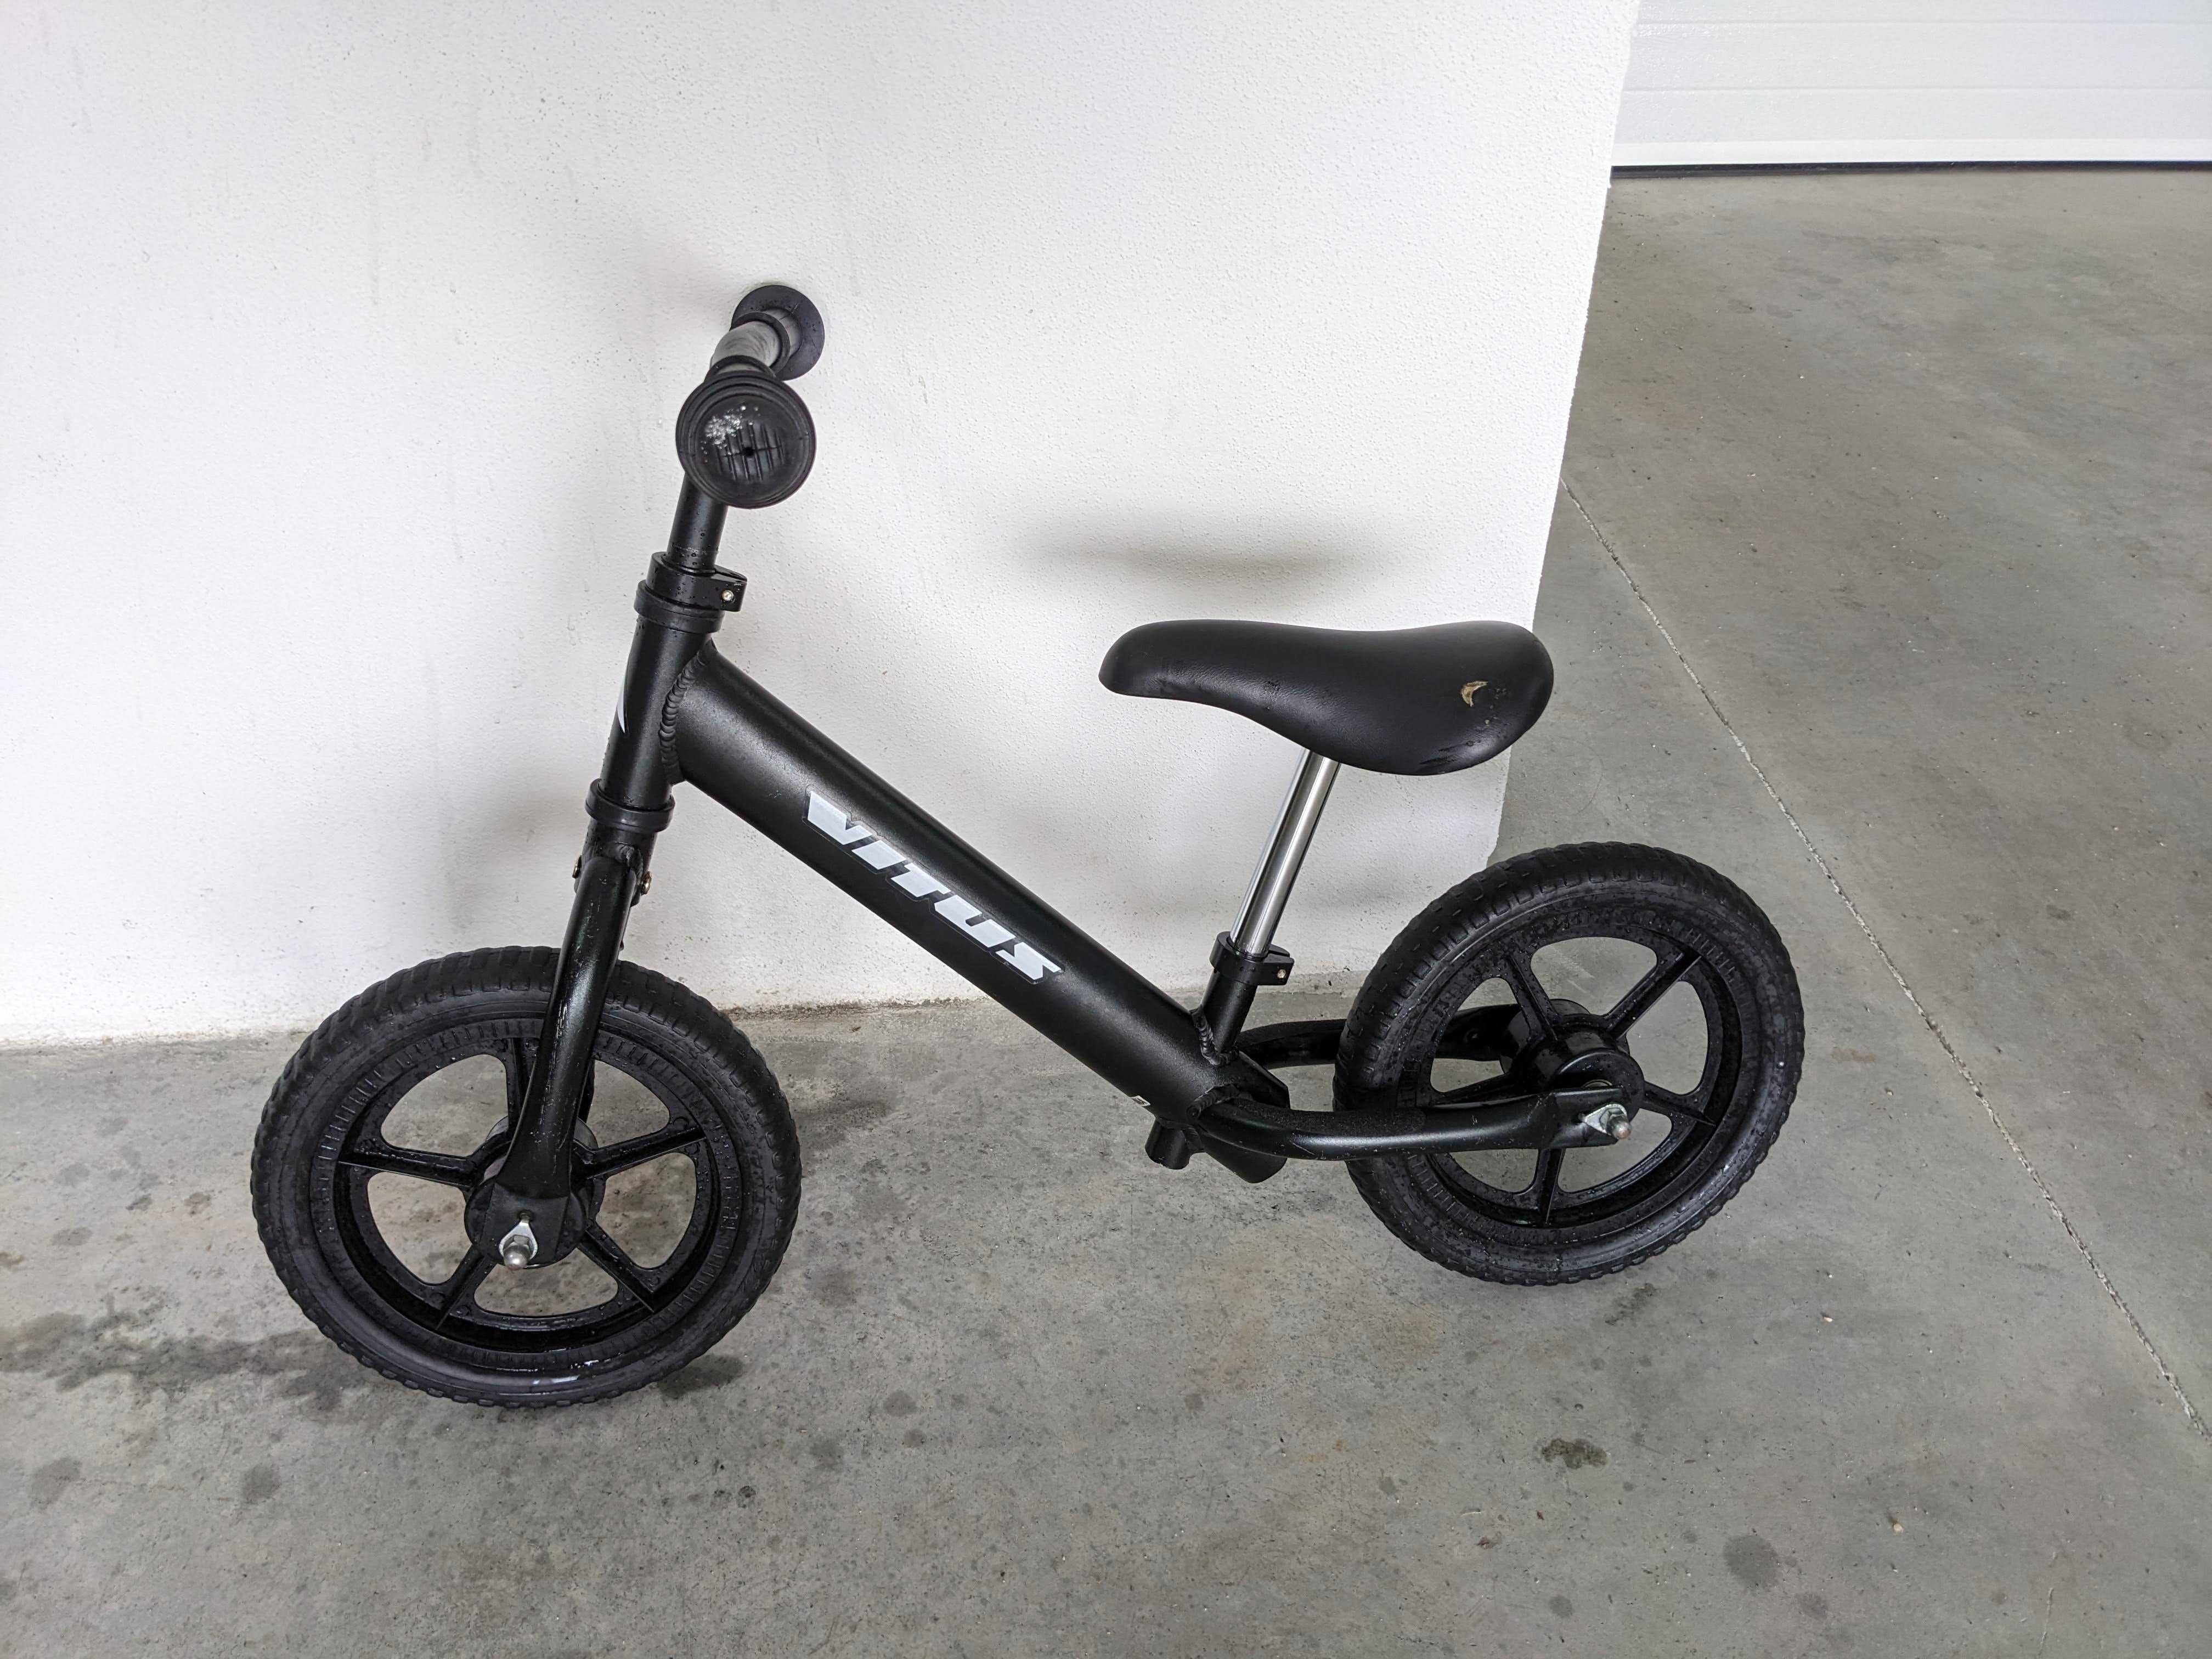 Bicicleta de equilíbrio Vitus balance bike 10 polegadas e 1.9kg